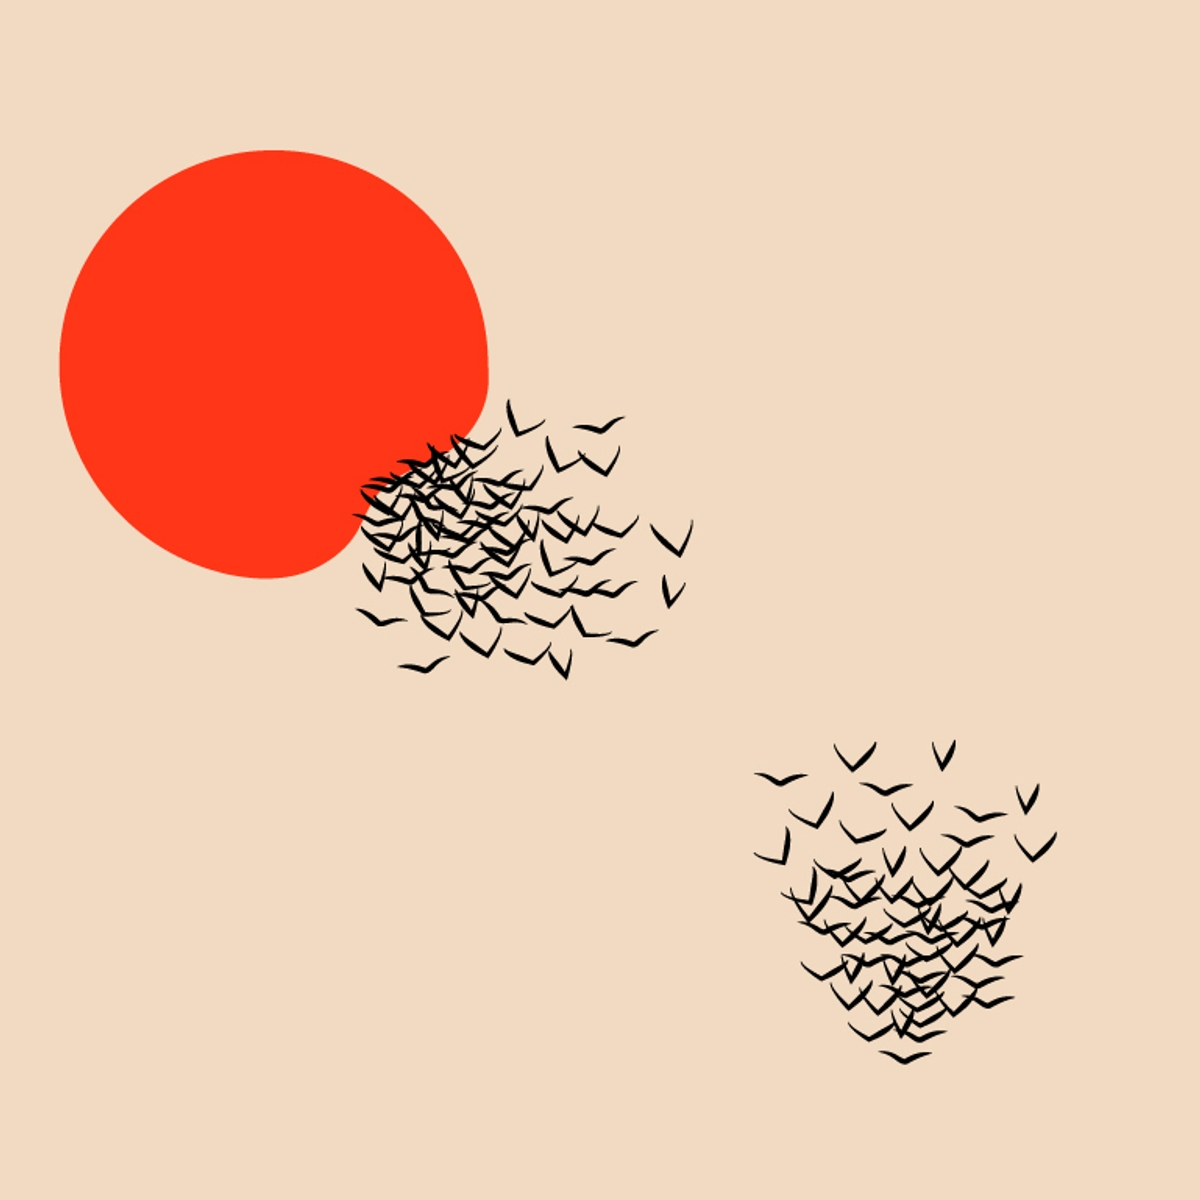 Illustration du chapitre "Créatures" montrant un soleil rouge et des nuées d'oiseaux